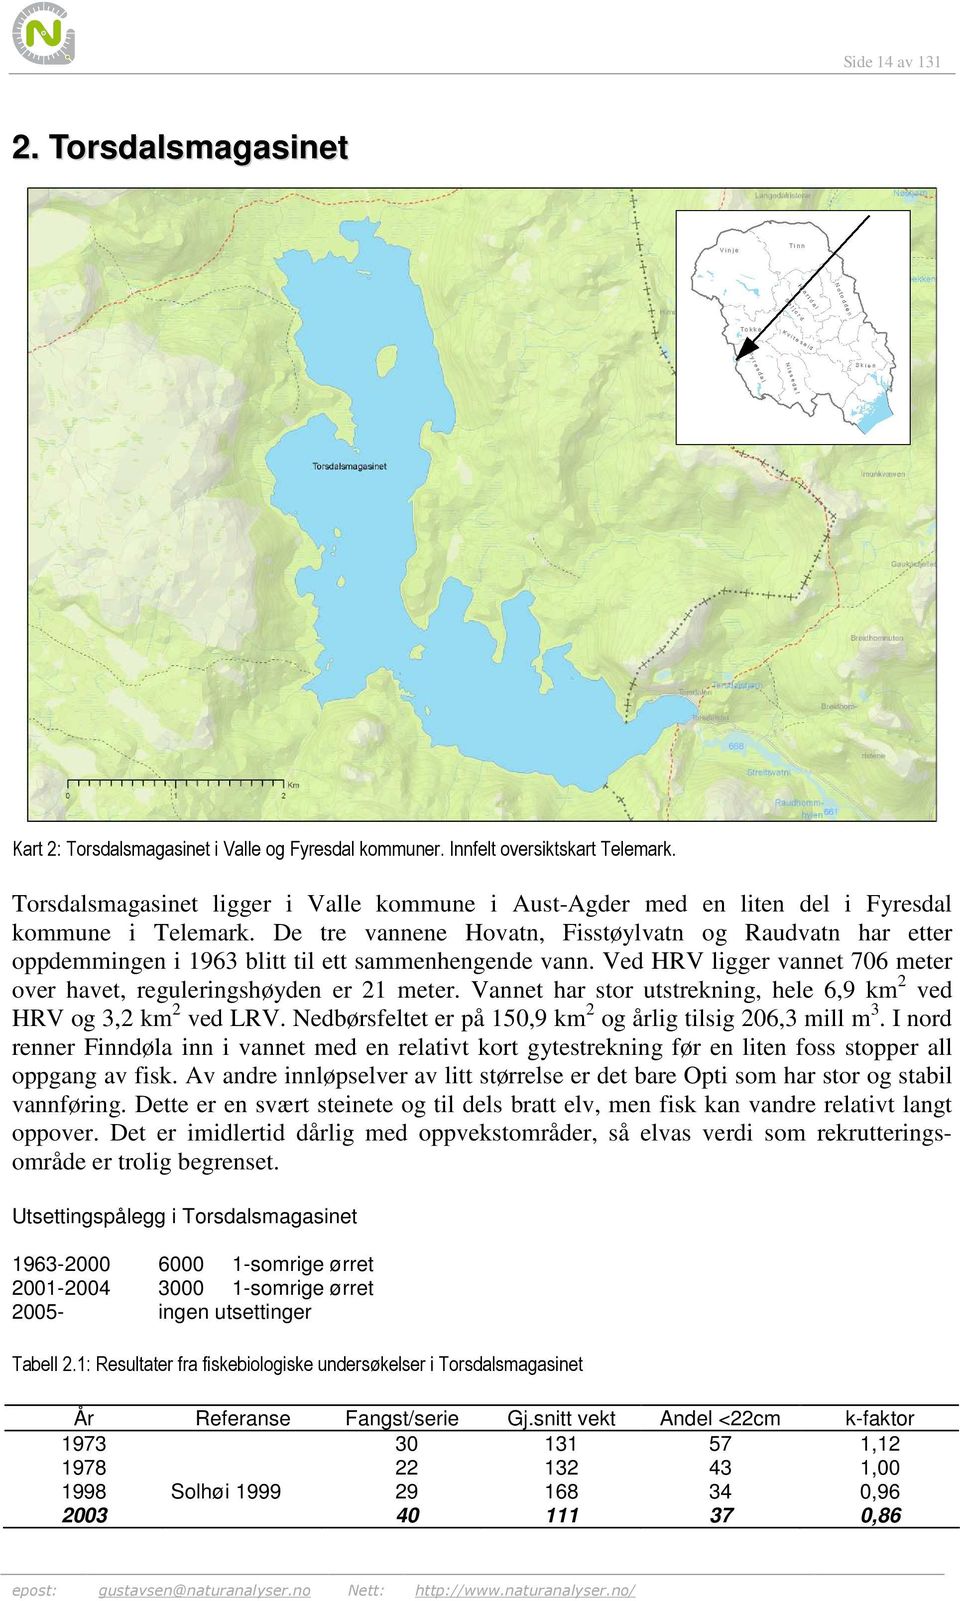 De tre vannene Hovatn, Fisstøylvatn og Raudvatn har etter oppdemmingen i 1963 blitt til ett sammenhengende vann. Ved HRV ligger vannet 706 meter over havet, reguleringshøyden er 21 meter.